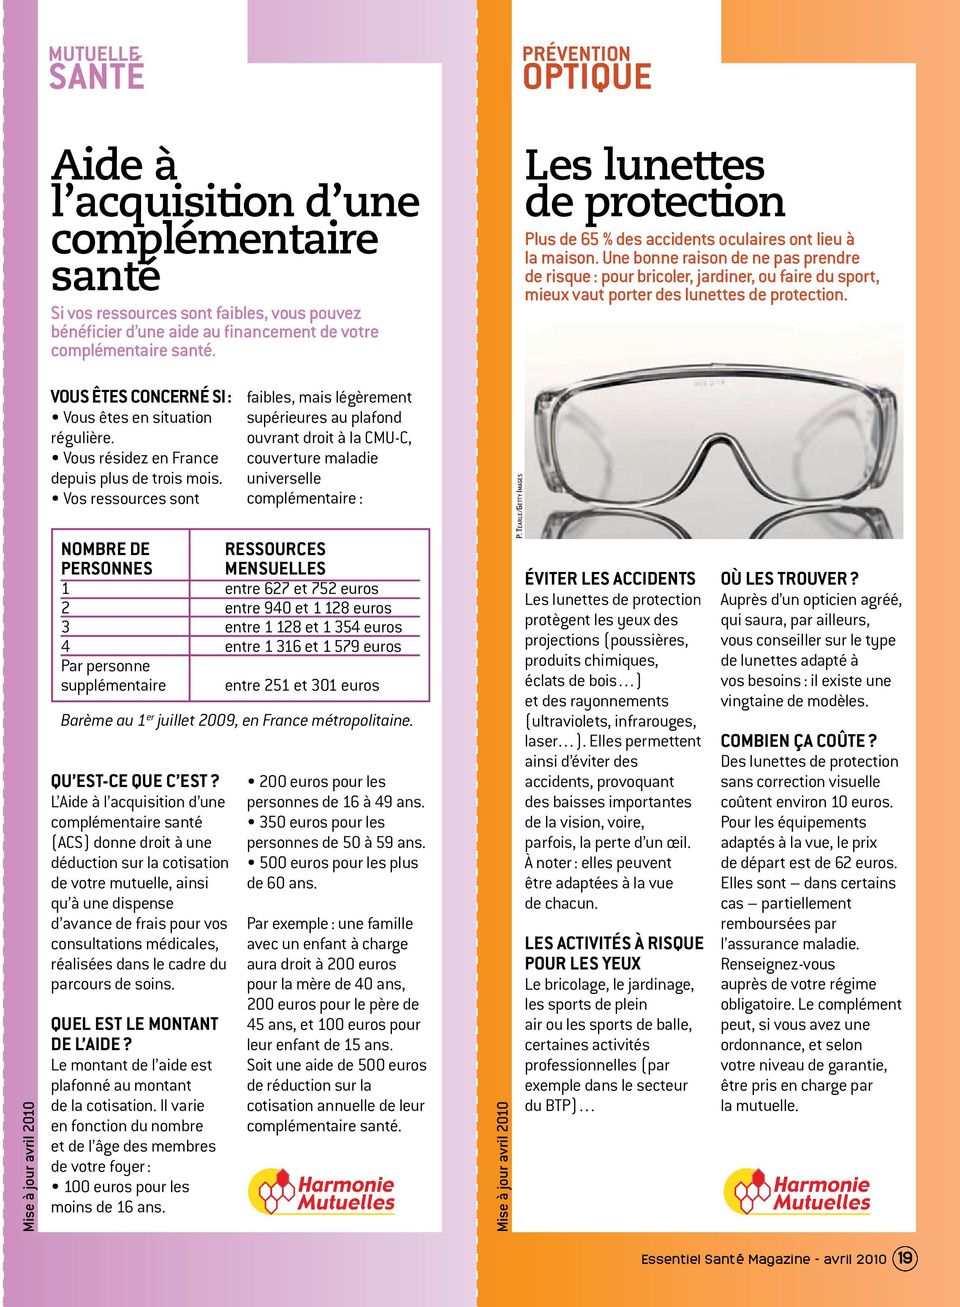 Une bonne raison de ne pas prendre de risque : pour bricoler, jardiner, ou faire du sport, mieux vaut porter des lunettes de protection.